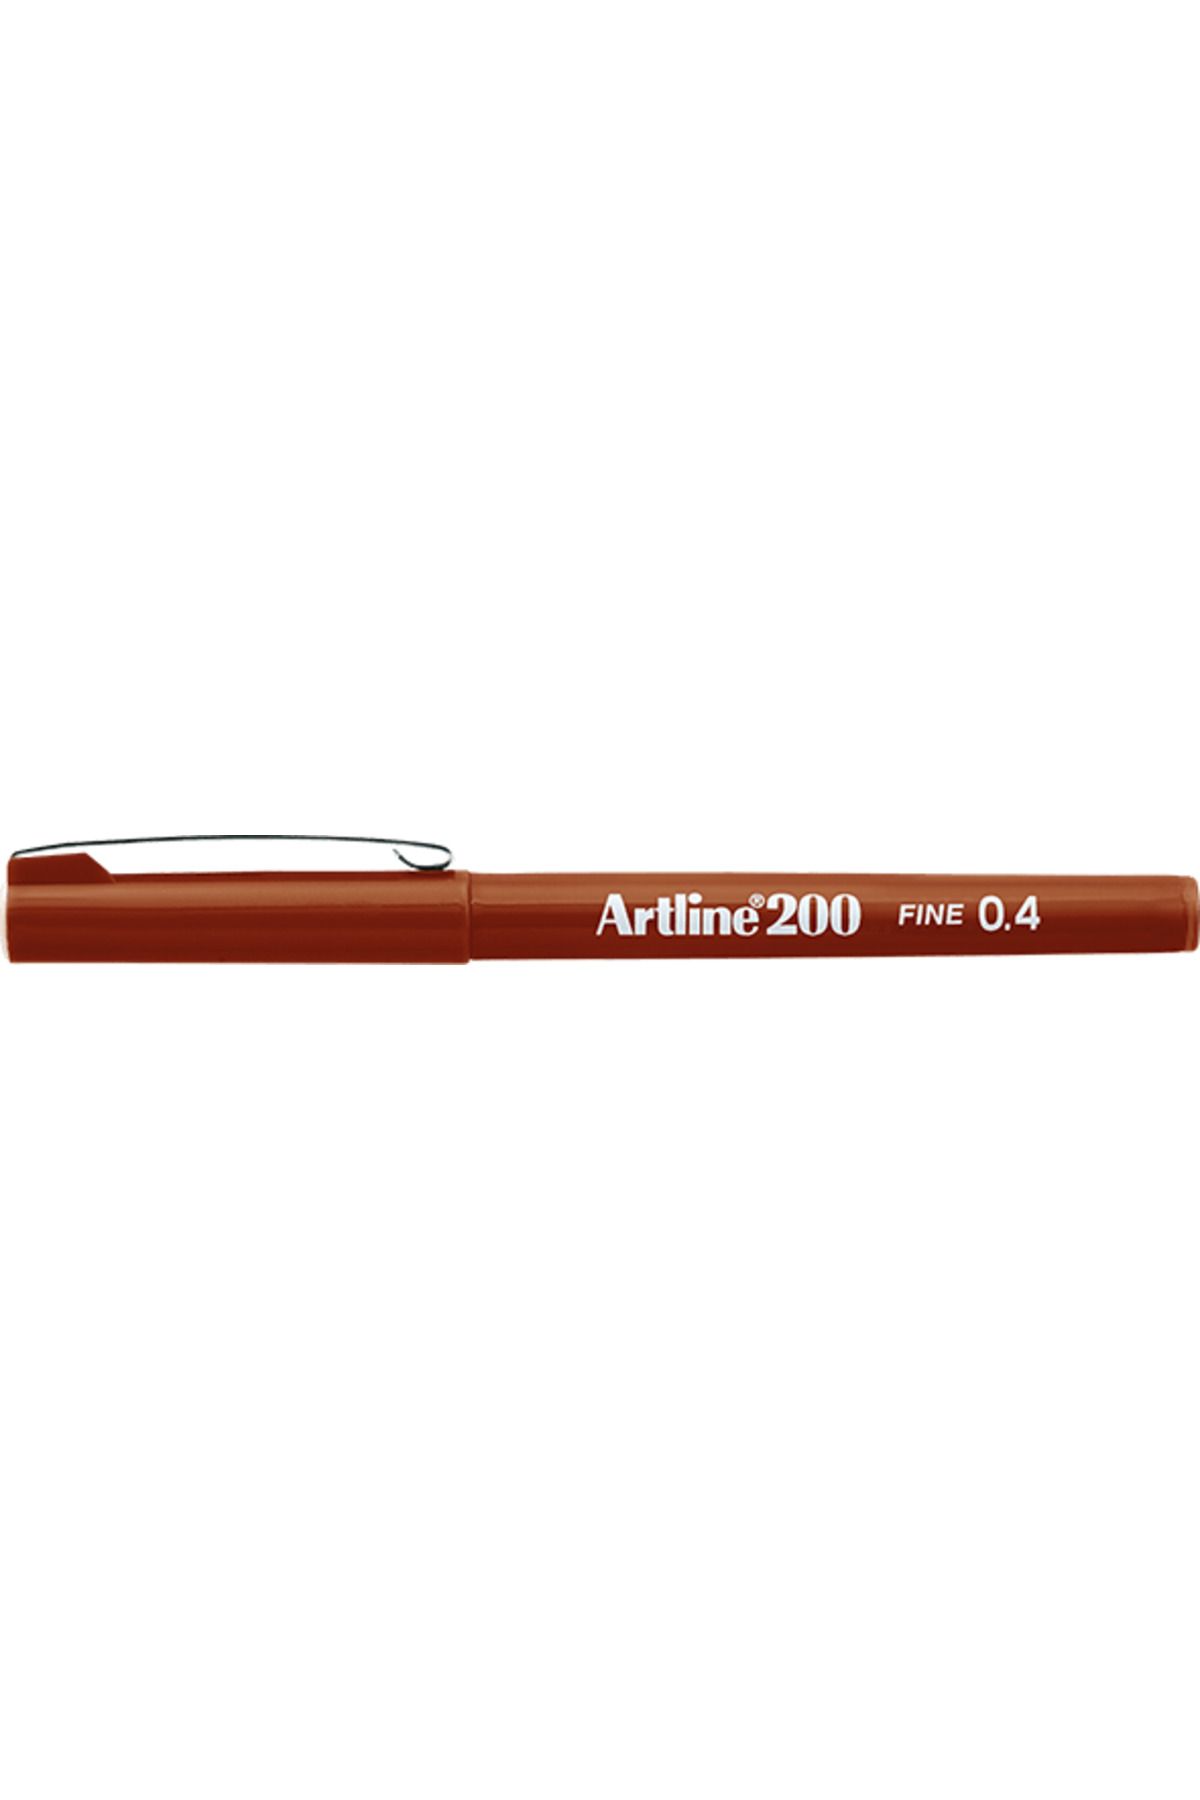 artline 200 Fineliner 0.4mm Keçe Uçlu Kalem Kahverengi